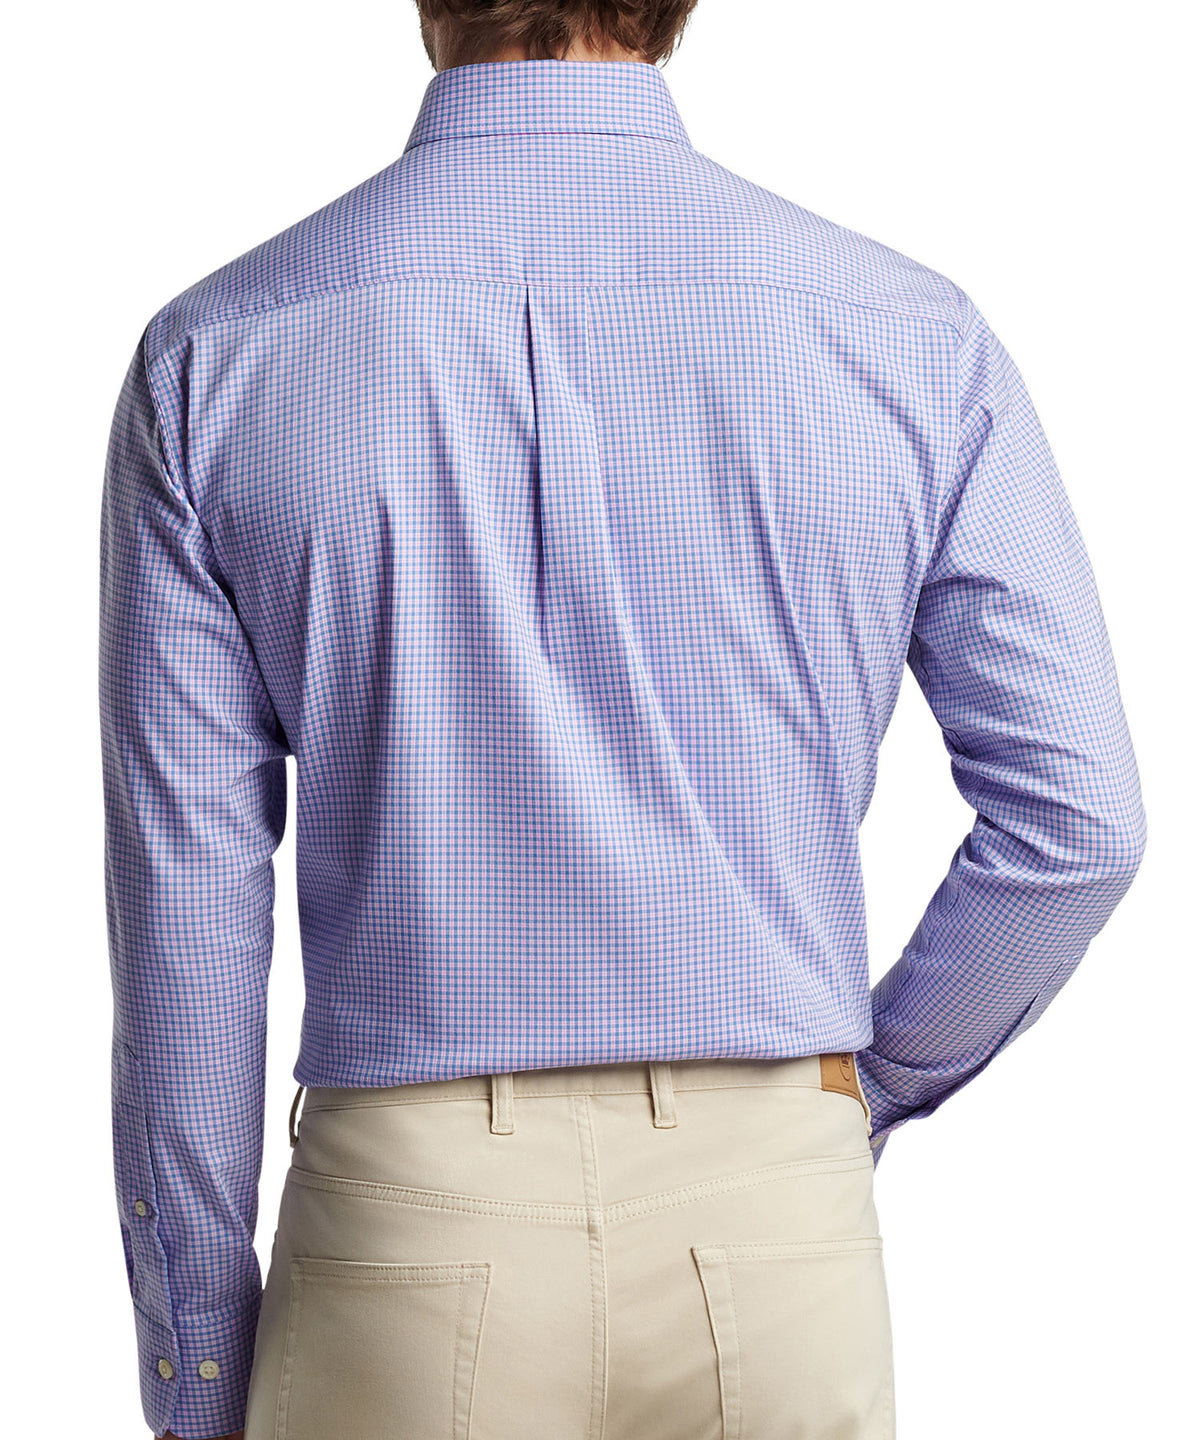 Peter Millar Long Sleeve Winthrop Button-Down Sport Shirt, Men's Big & Tall